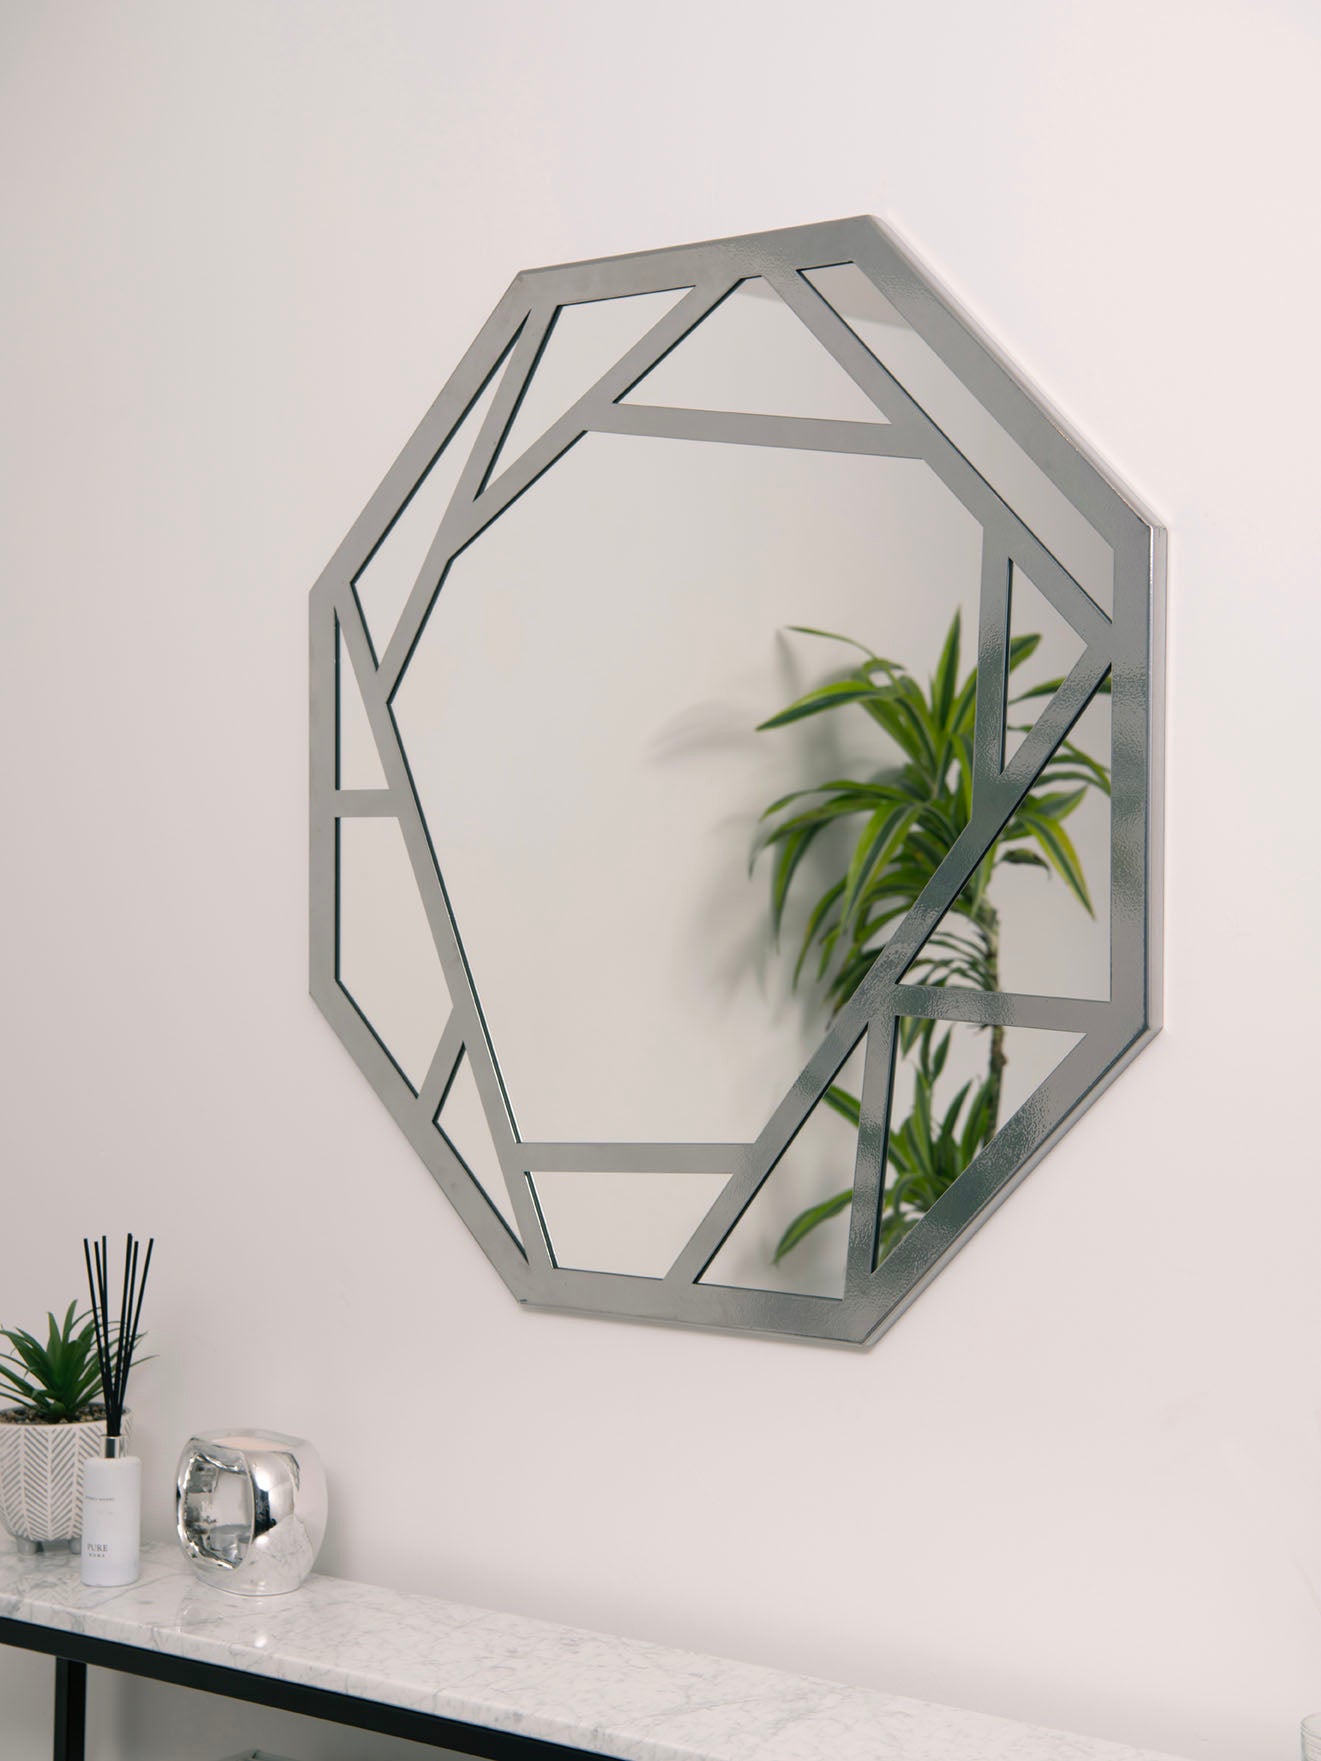 Abstract Geometric Wall Mirror - RESS Furniture Ltd. Chrome